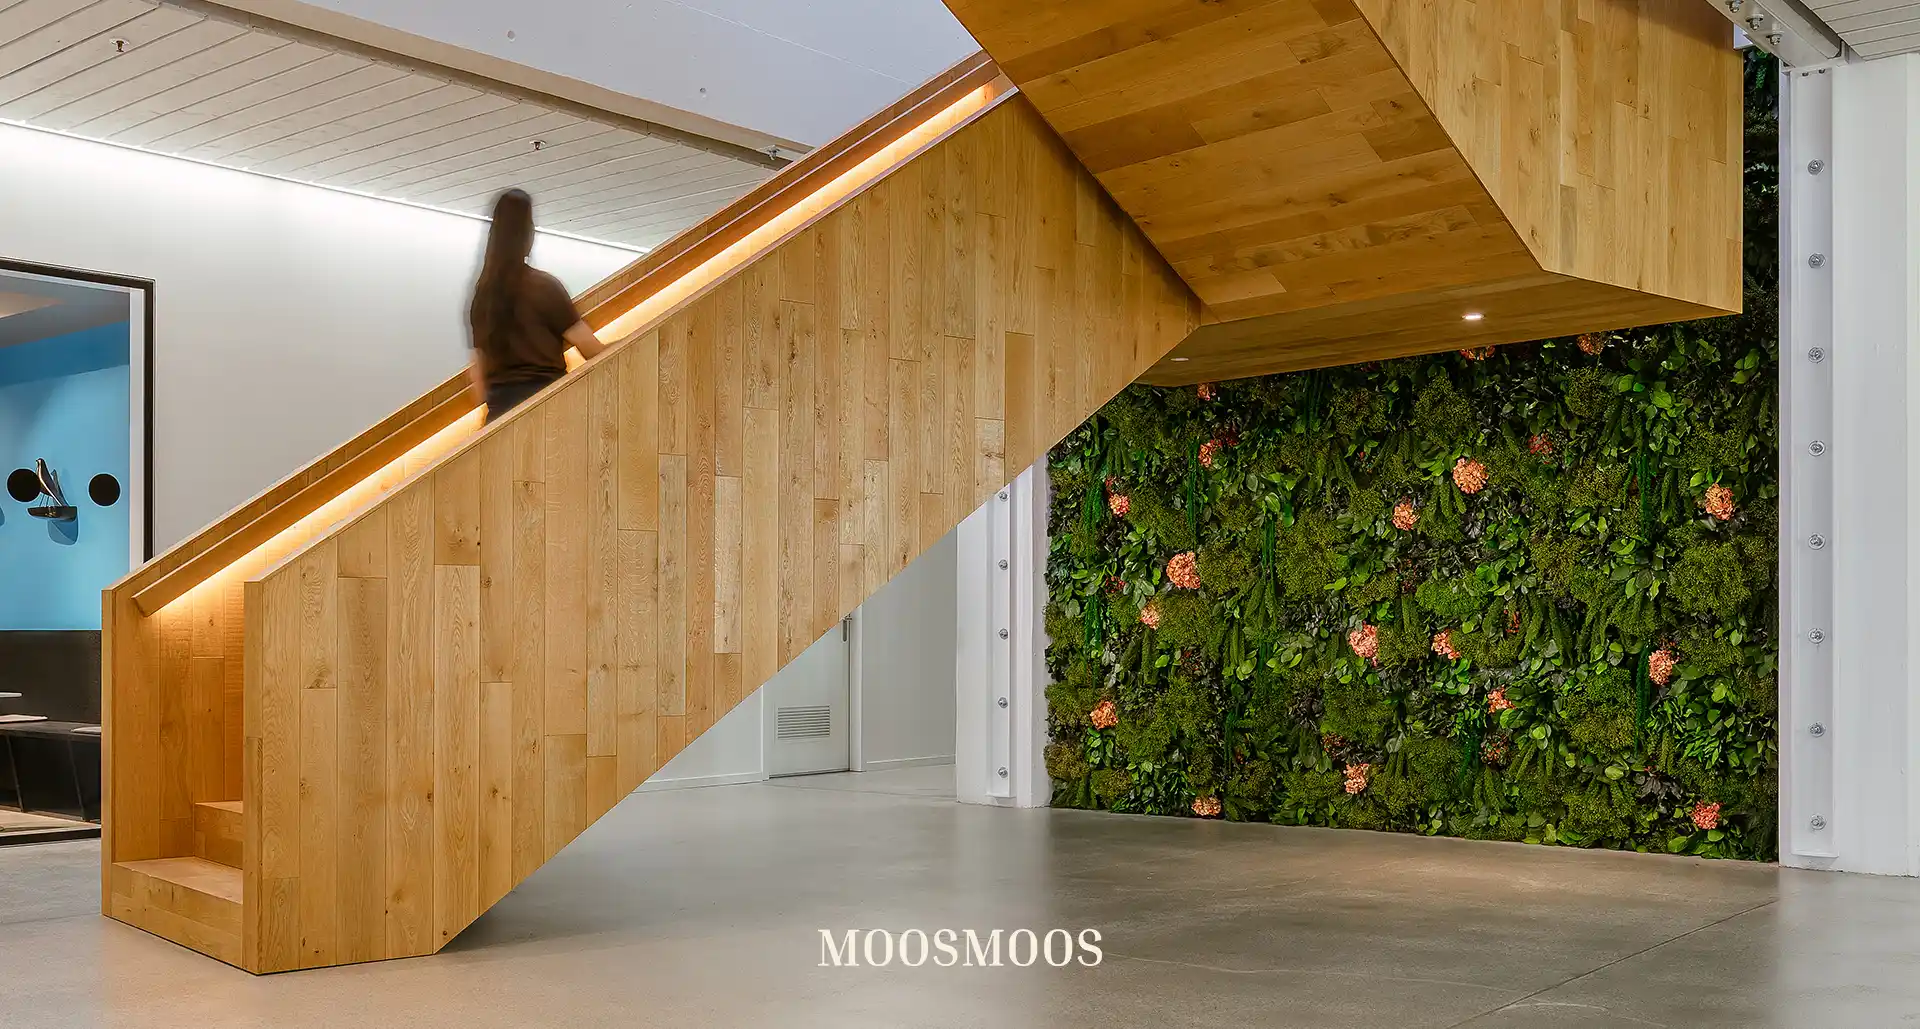 MOOSMOOS Blumenwand / Flowerwall mit echten Blumen, Pflanzen und Moosen im Treppenaufgang